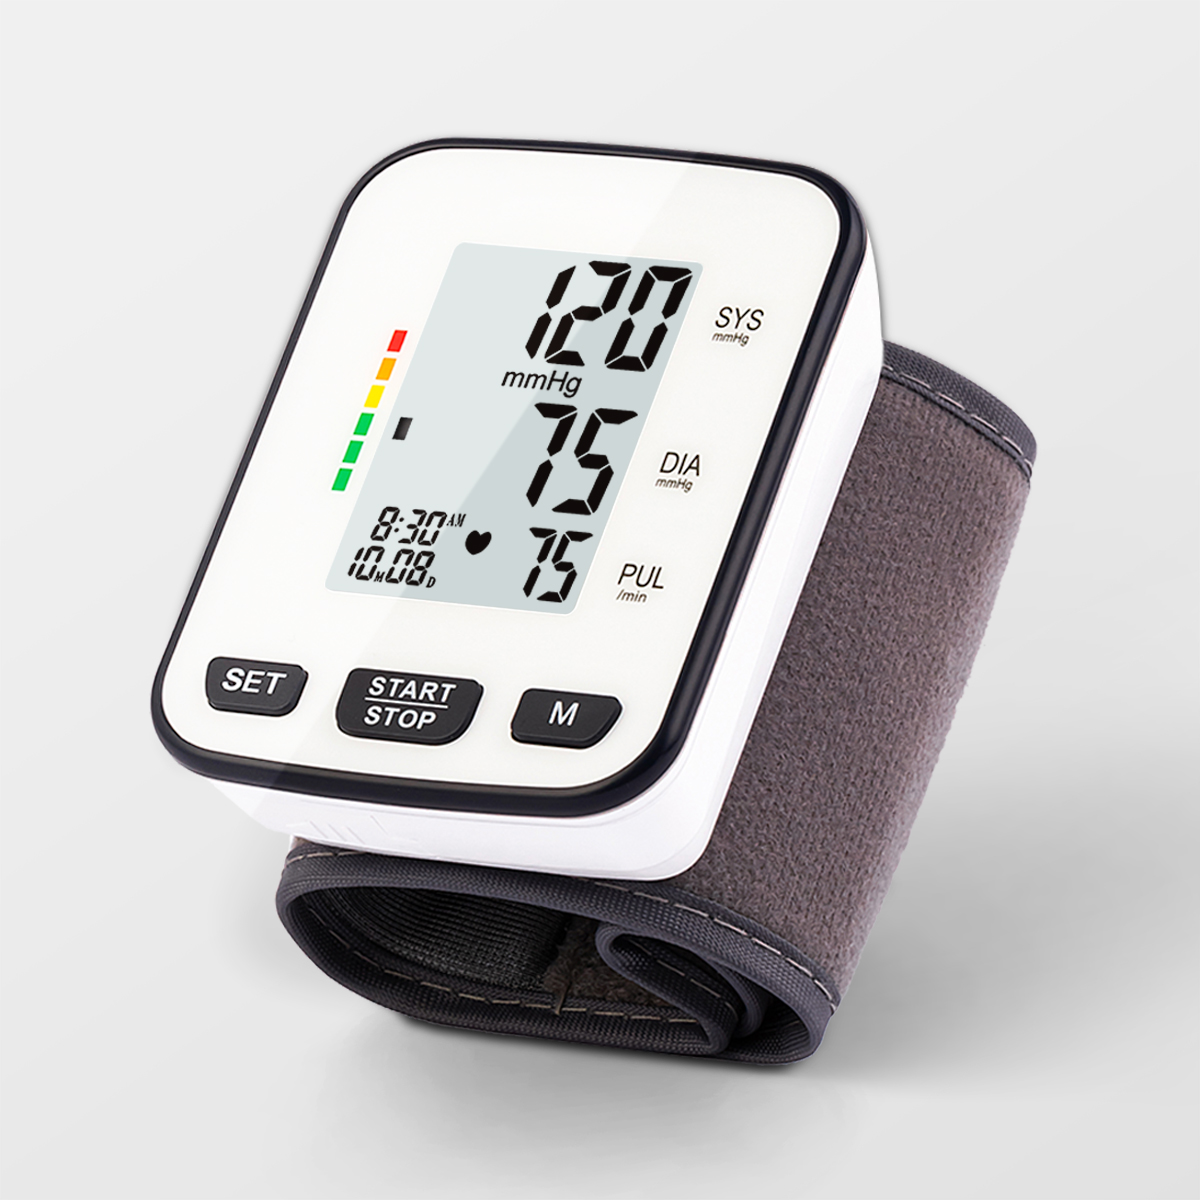 Logo sa Supply sa Pabrika Ipasibo ang Wrist Blood Pressure Monitor Digital Tensiometer